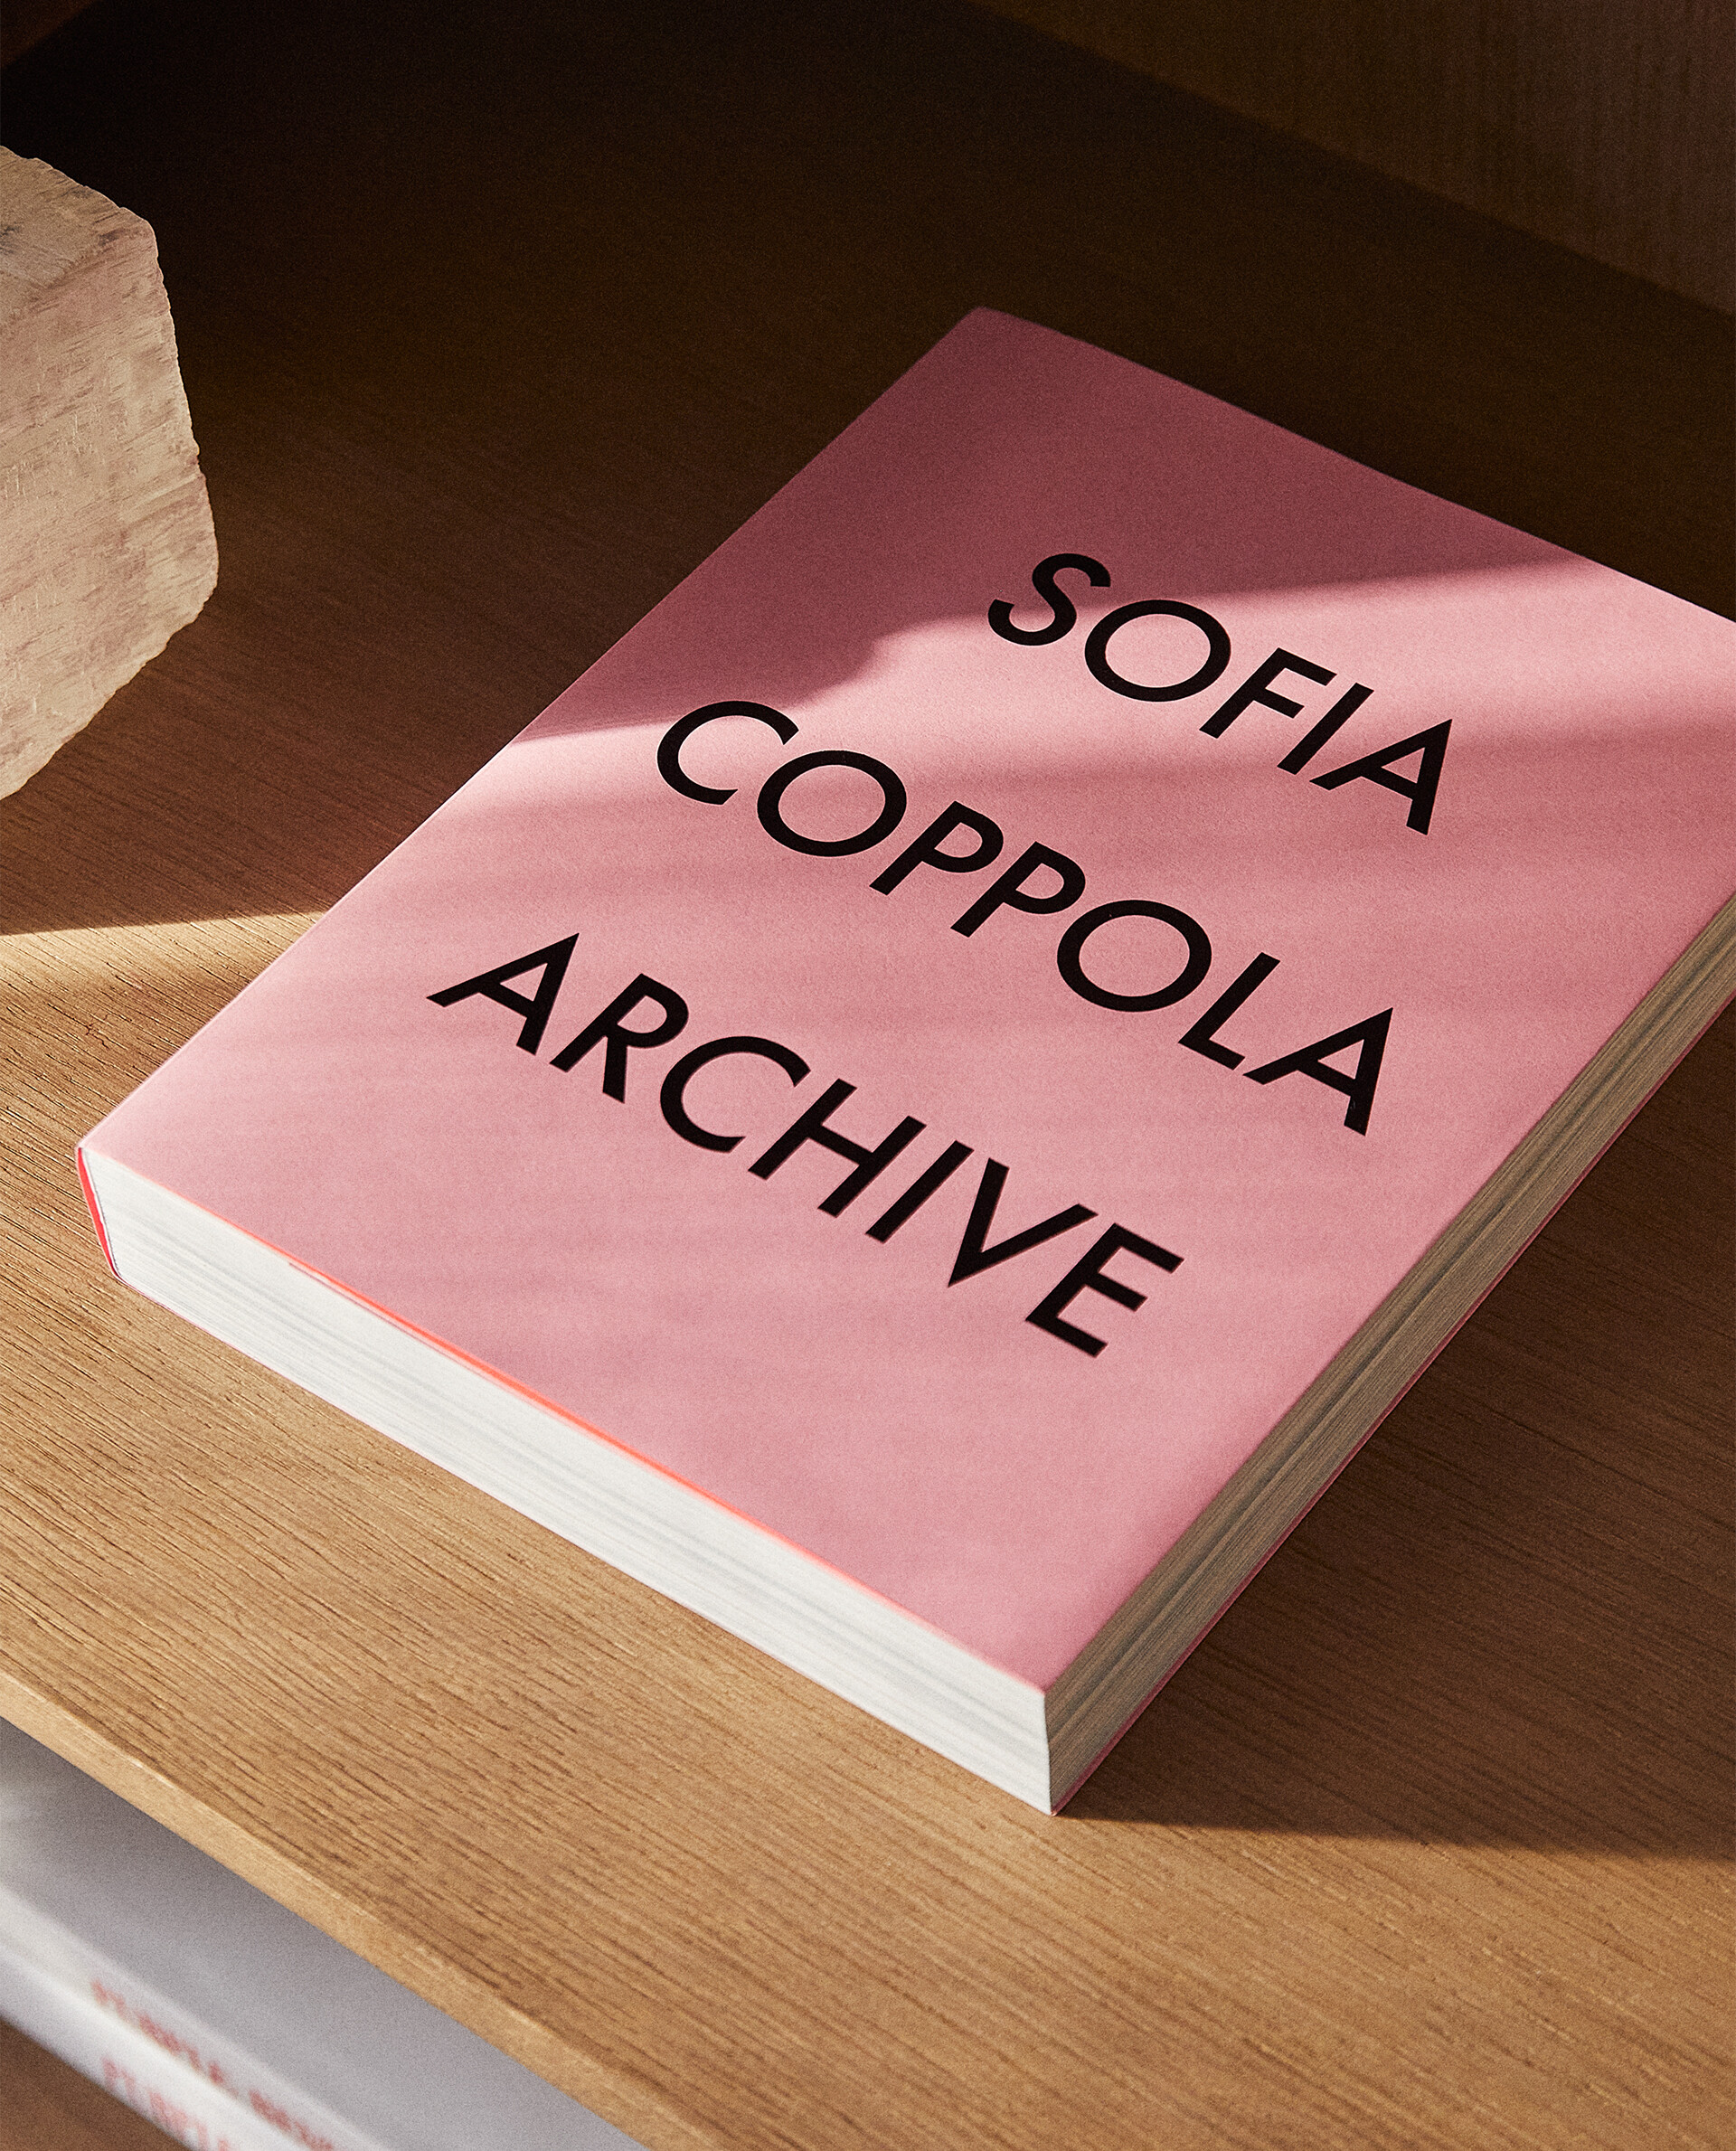 Archive 1999 - 2023, el primer y esperado libro de Sofia Coppola